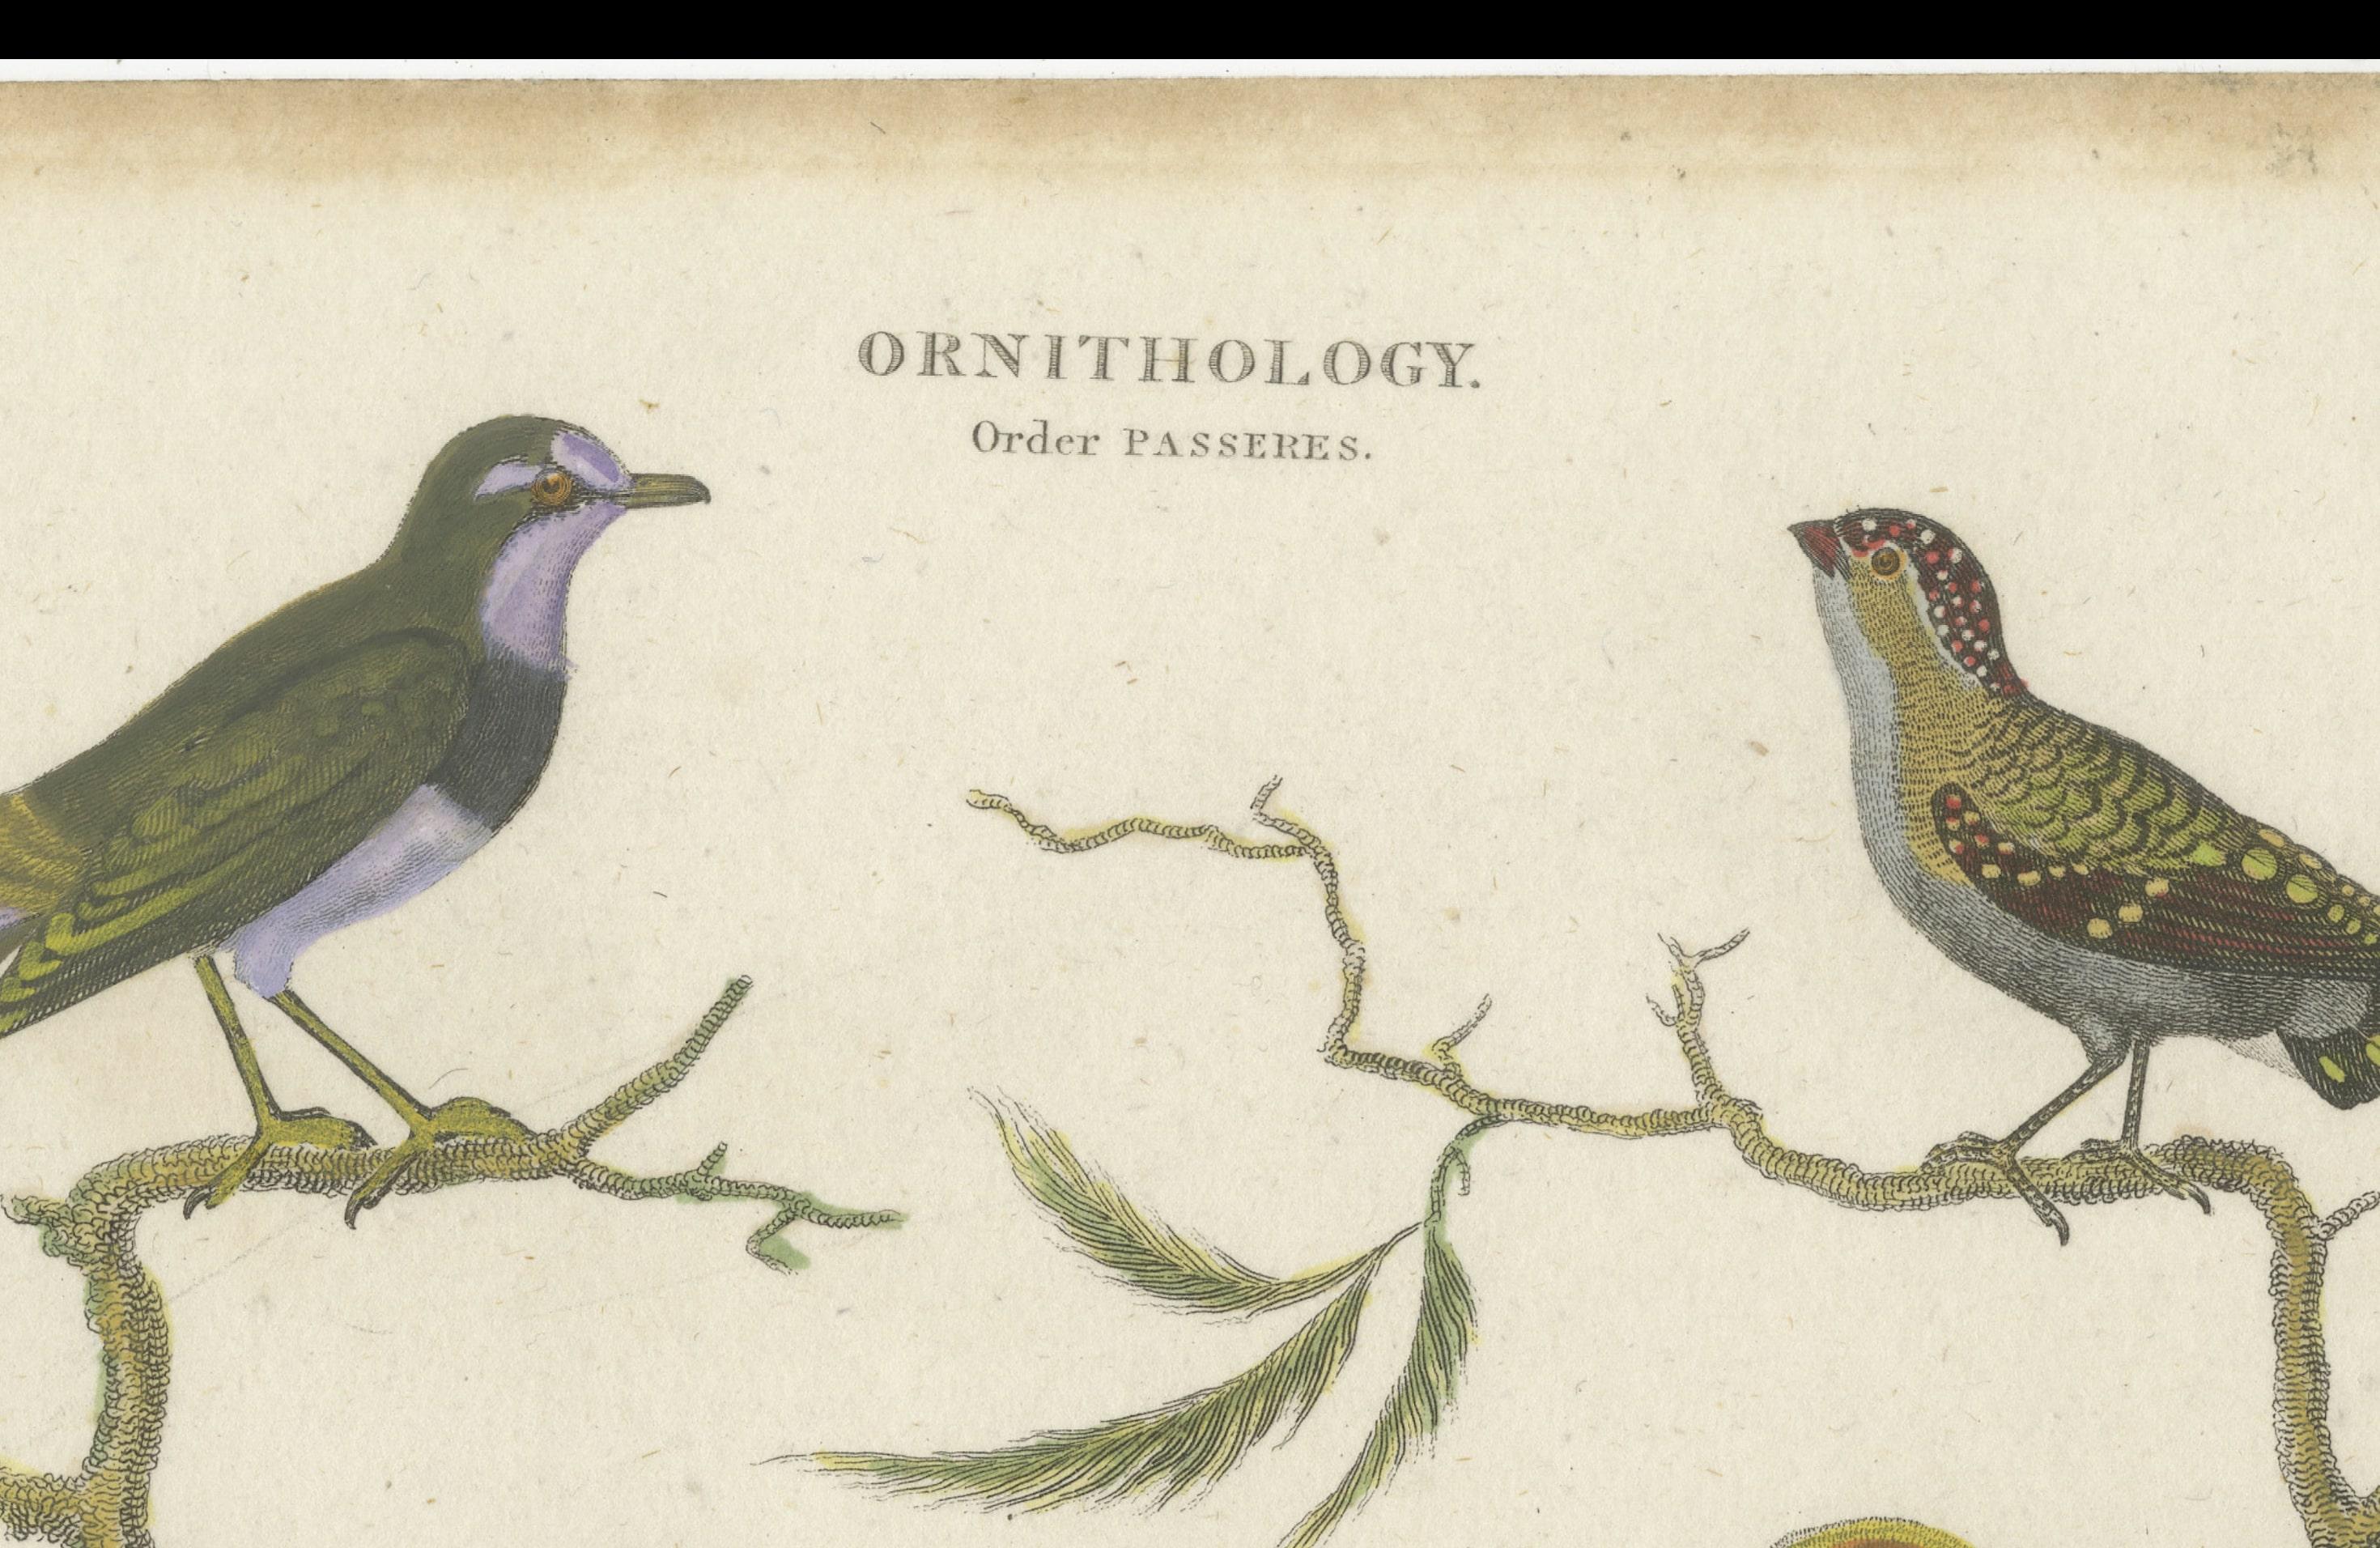 Dieser seltene handkolorierte Originaldruck enthält detaillierte Abbildungen von Vögeln, und am unteren Rand befindet sich ein Text, der zur Identifizierung der abgebildeten Vögel dient. Hier ist der transkribierte Text zusammen mit einer